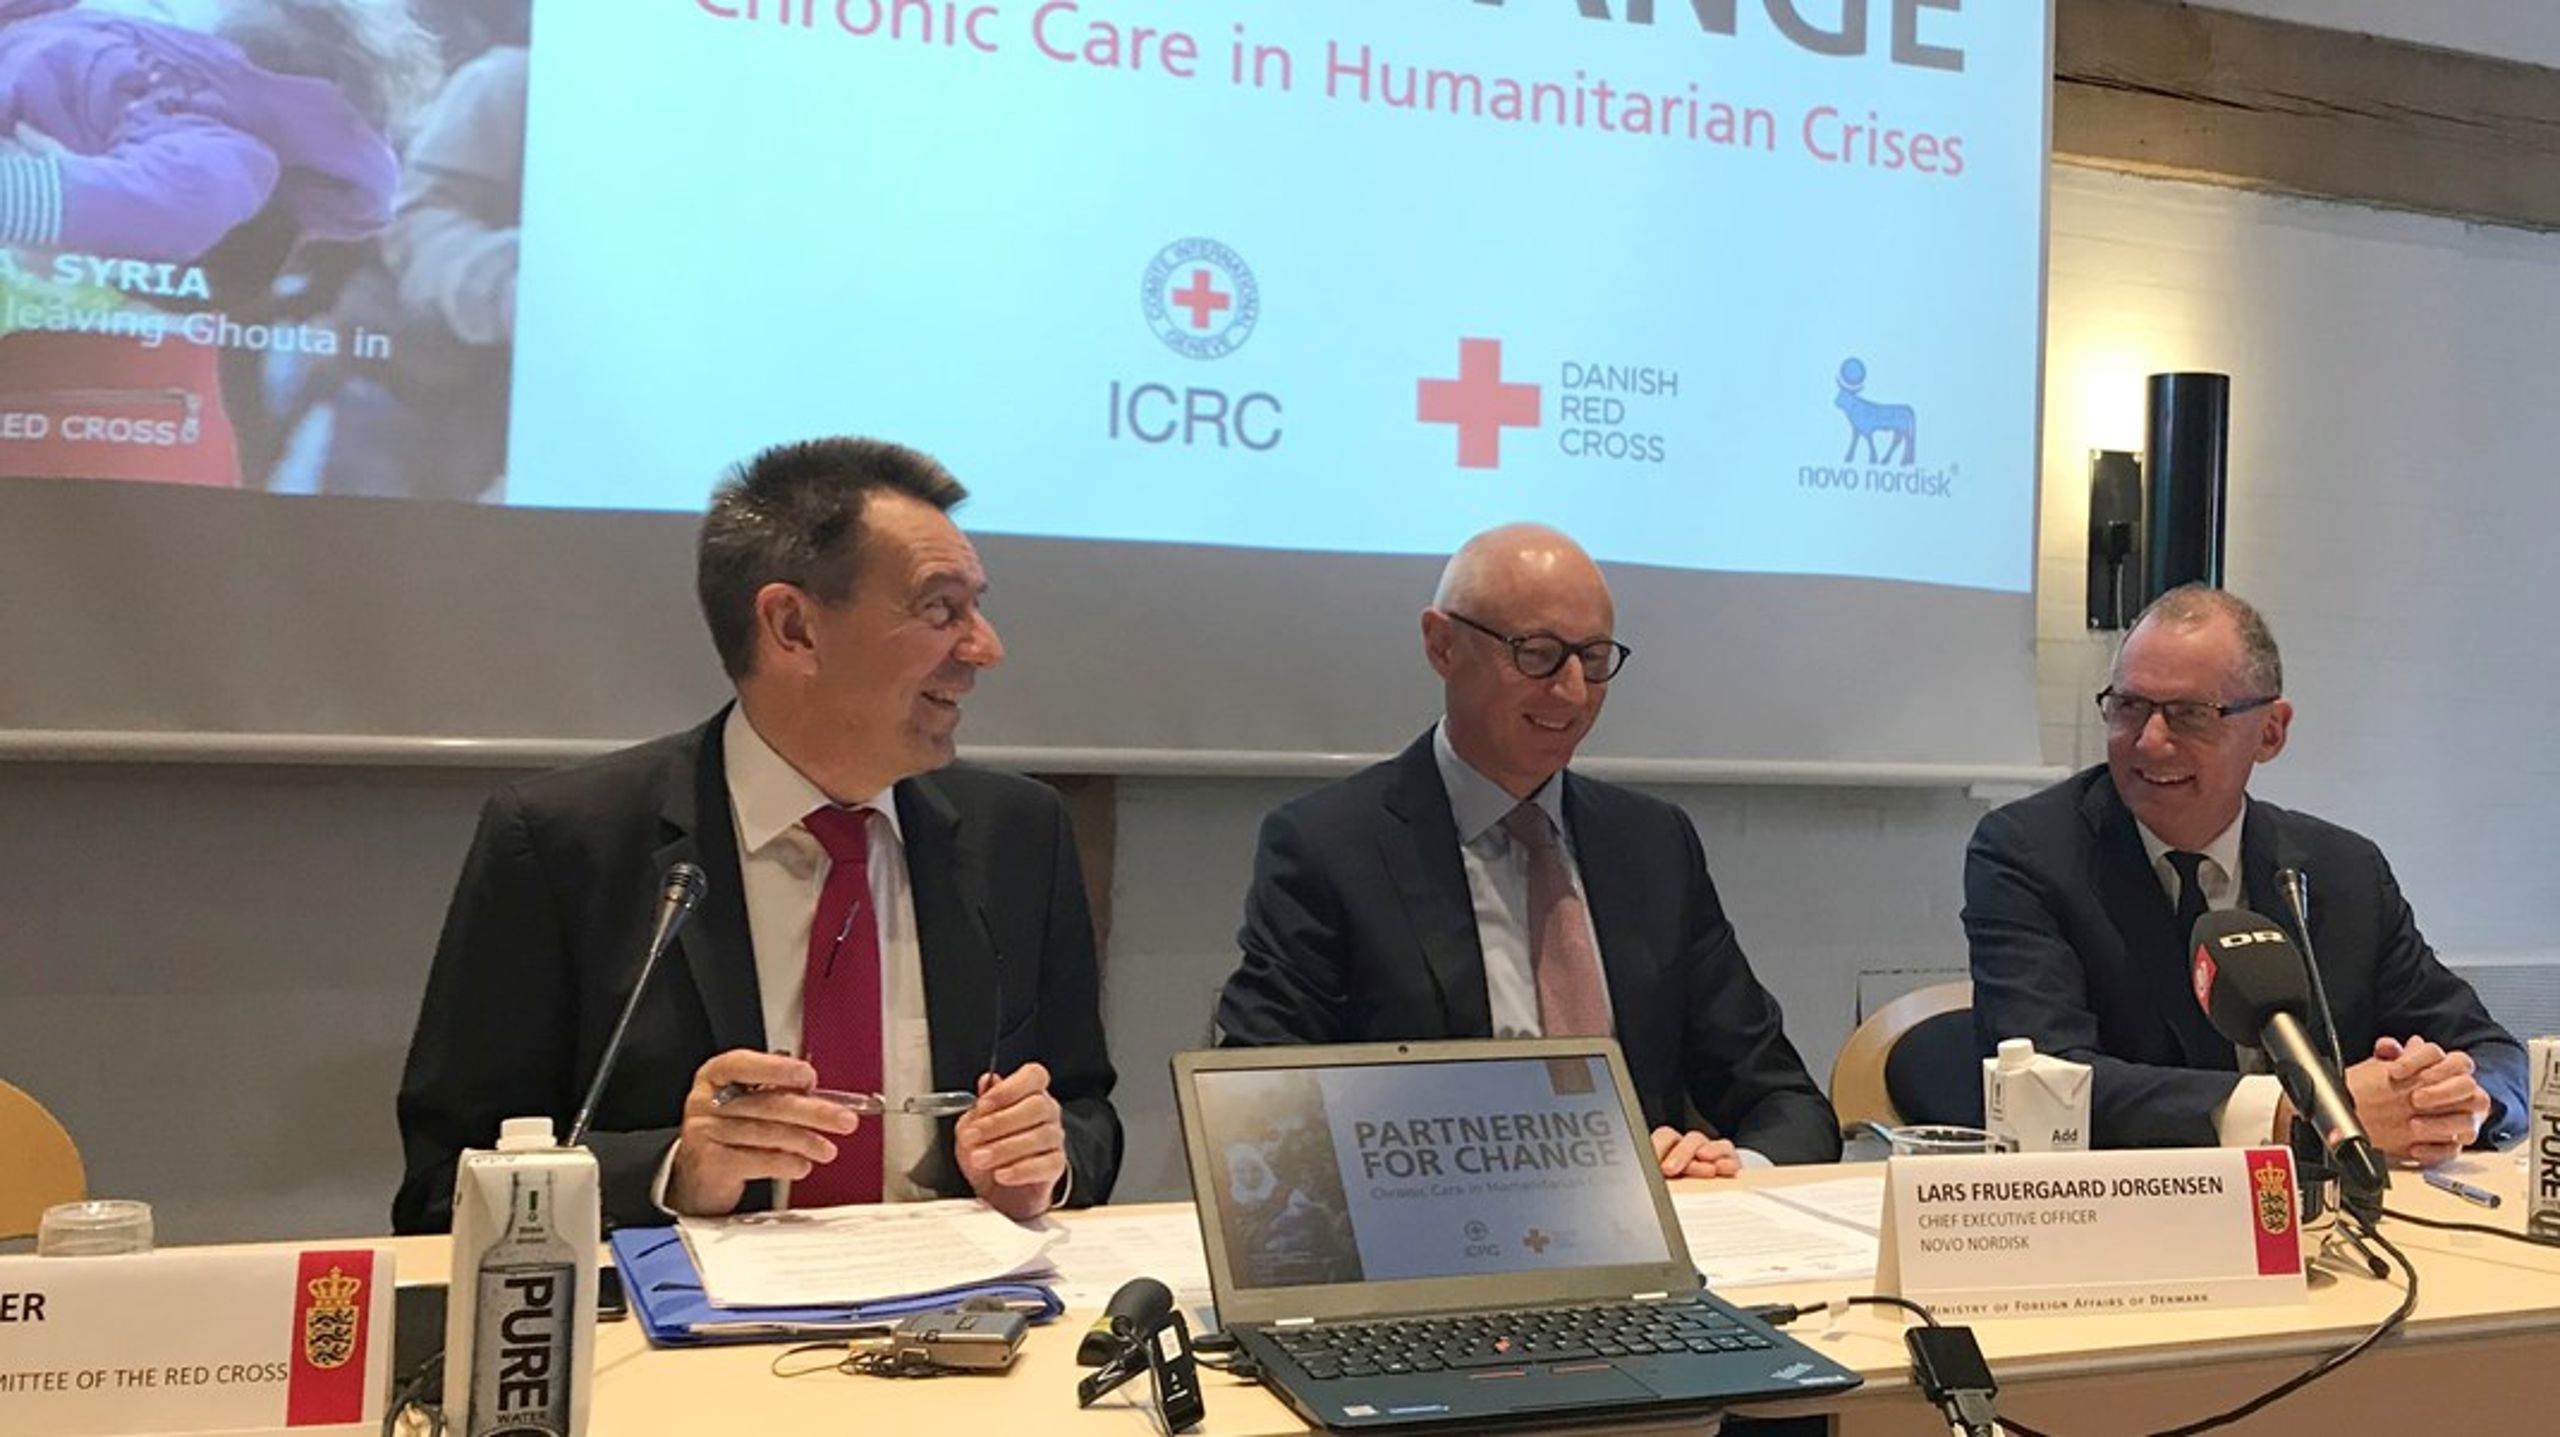 Et eksempel på et strategisk partnerskab mellem civilsamfund og erhvervsliv er Røde Kors og Novo Nordisks Partnership for Change.&nbsp;Organisationerne formåede at levere insulin&nbsp;til flygtningelejre i svært fremkommelige områder.